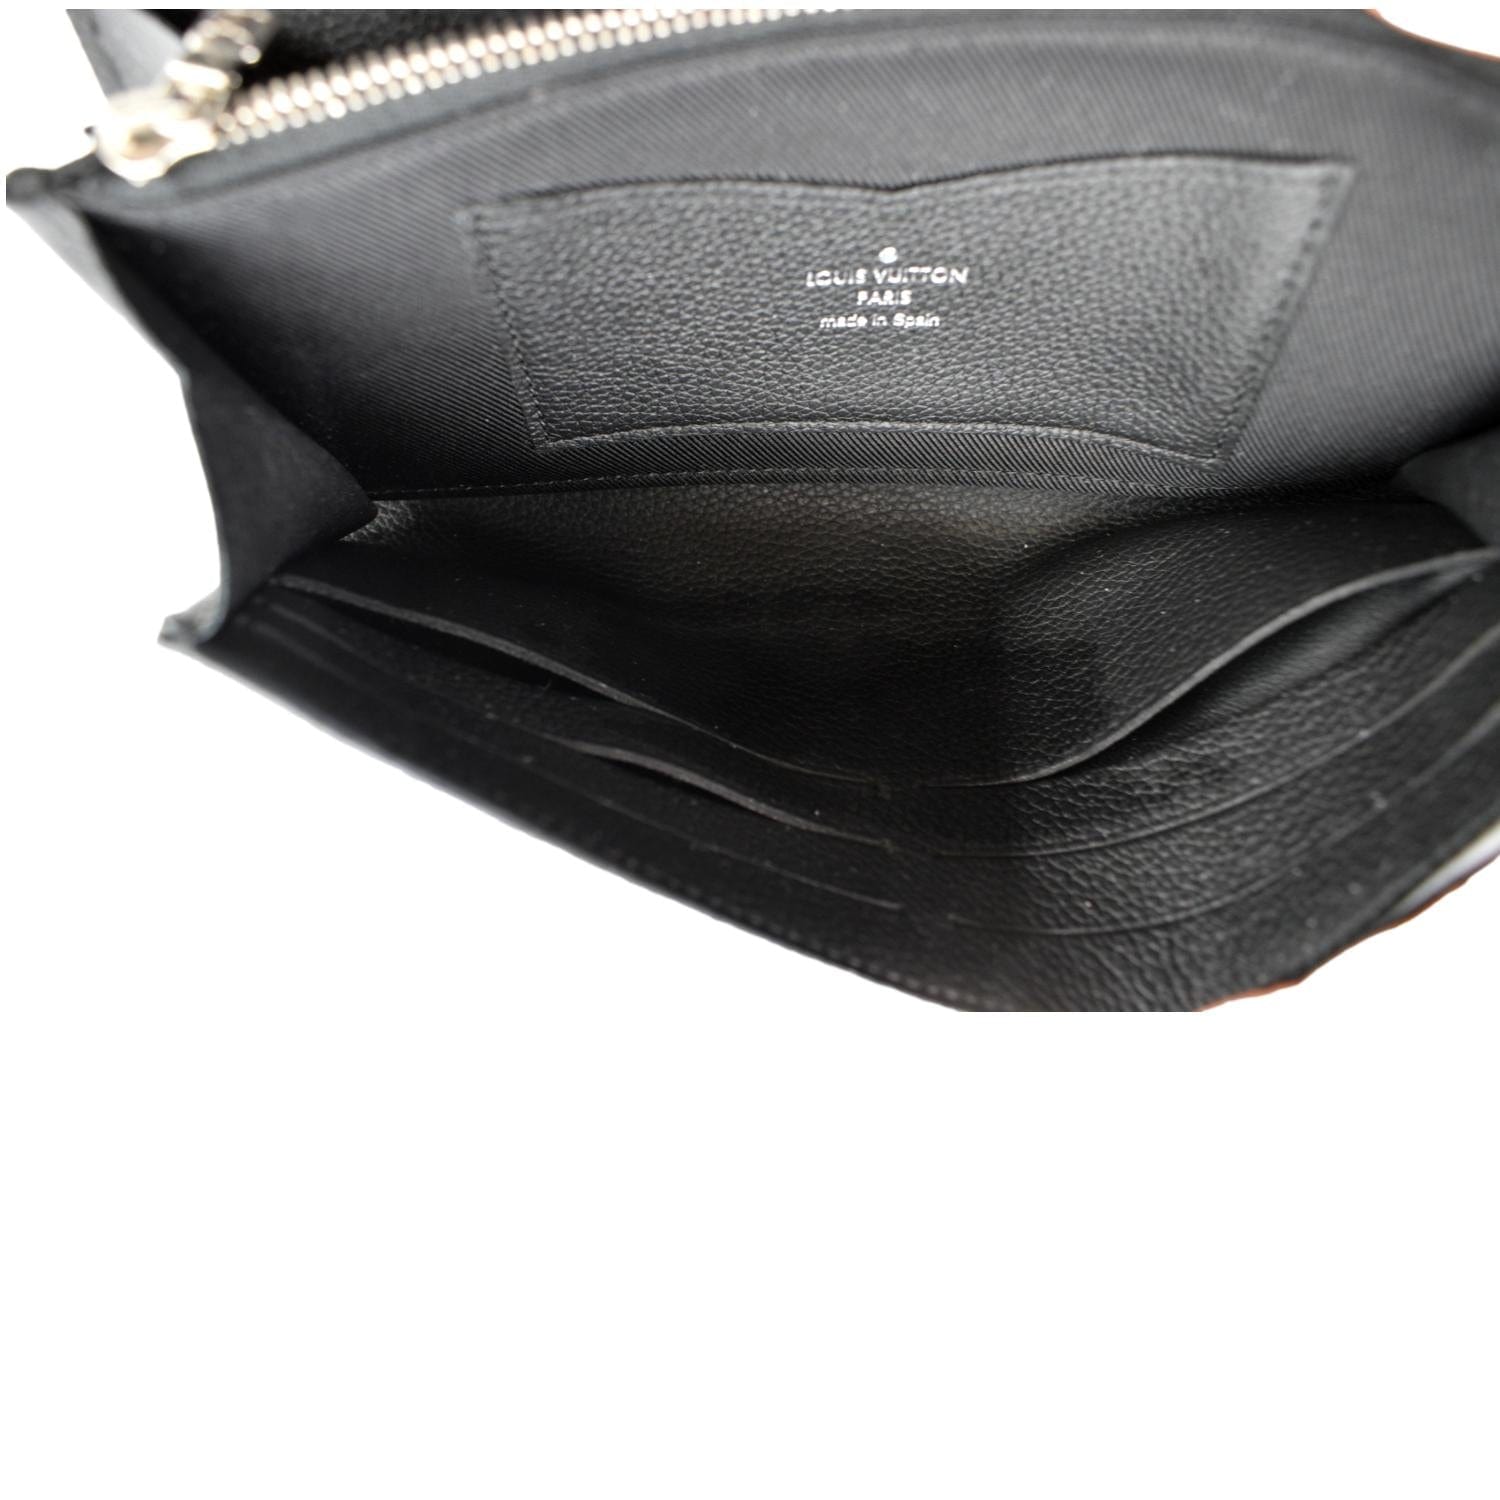 Louis Vuitton M62081 Portefeuille Lock Me 2 Compact Wallet Black